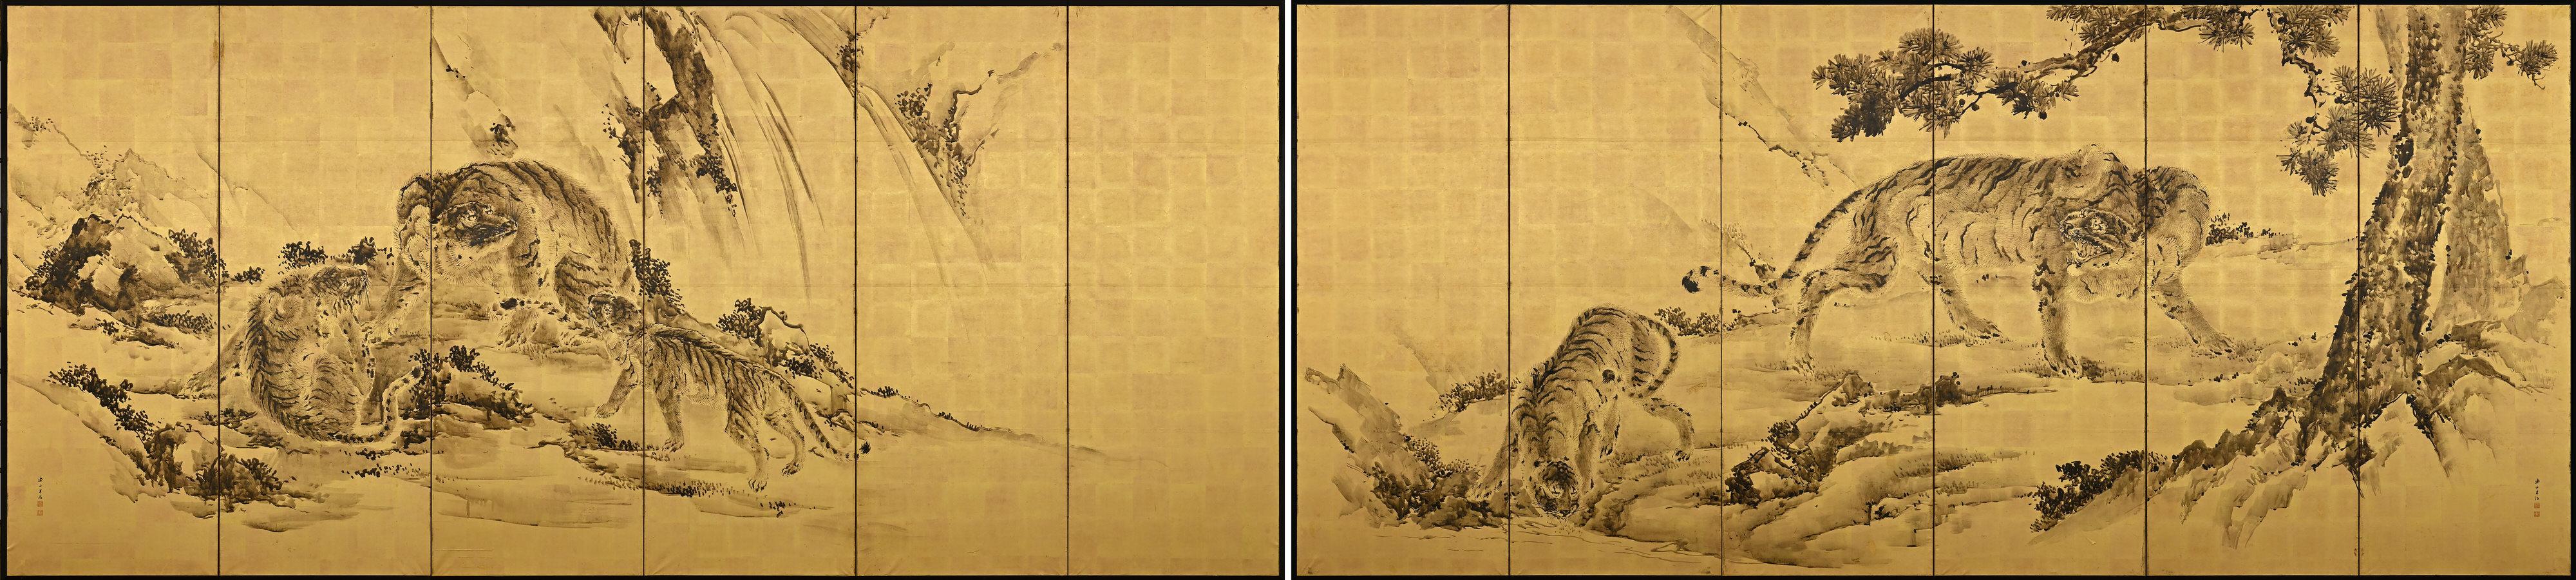 Kishi Renzan (1804-1859)

Tigres

Paire de paravents japonais à six panneaux.

Encre et feuille d'or sur papier.

Dans cette paire monochrome de paravents japonais à six volets peints sur feuilles d'or, Kishi Renzan a créé une composition